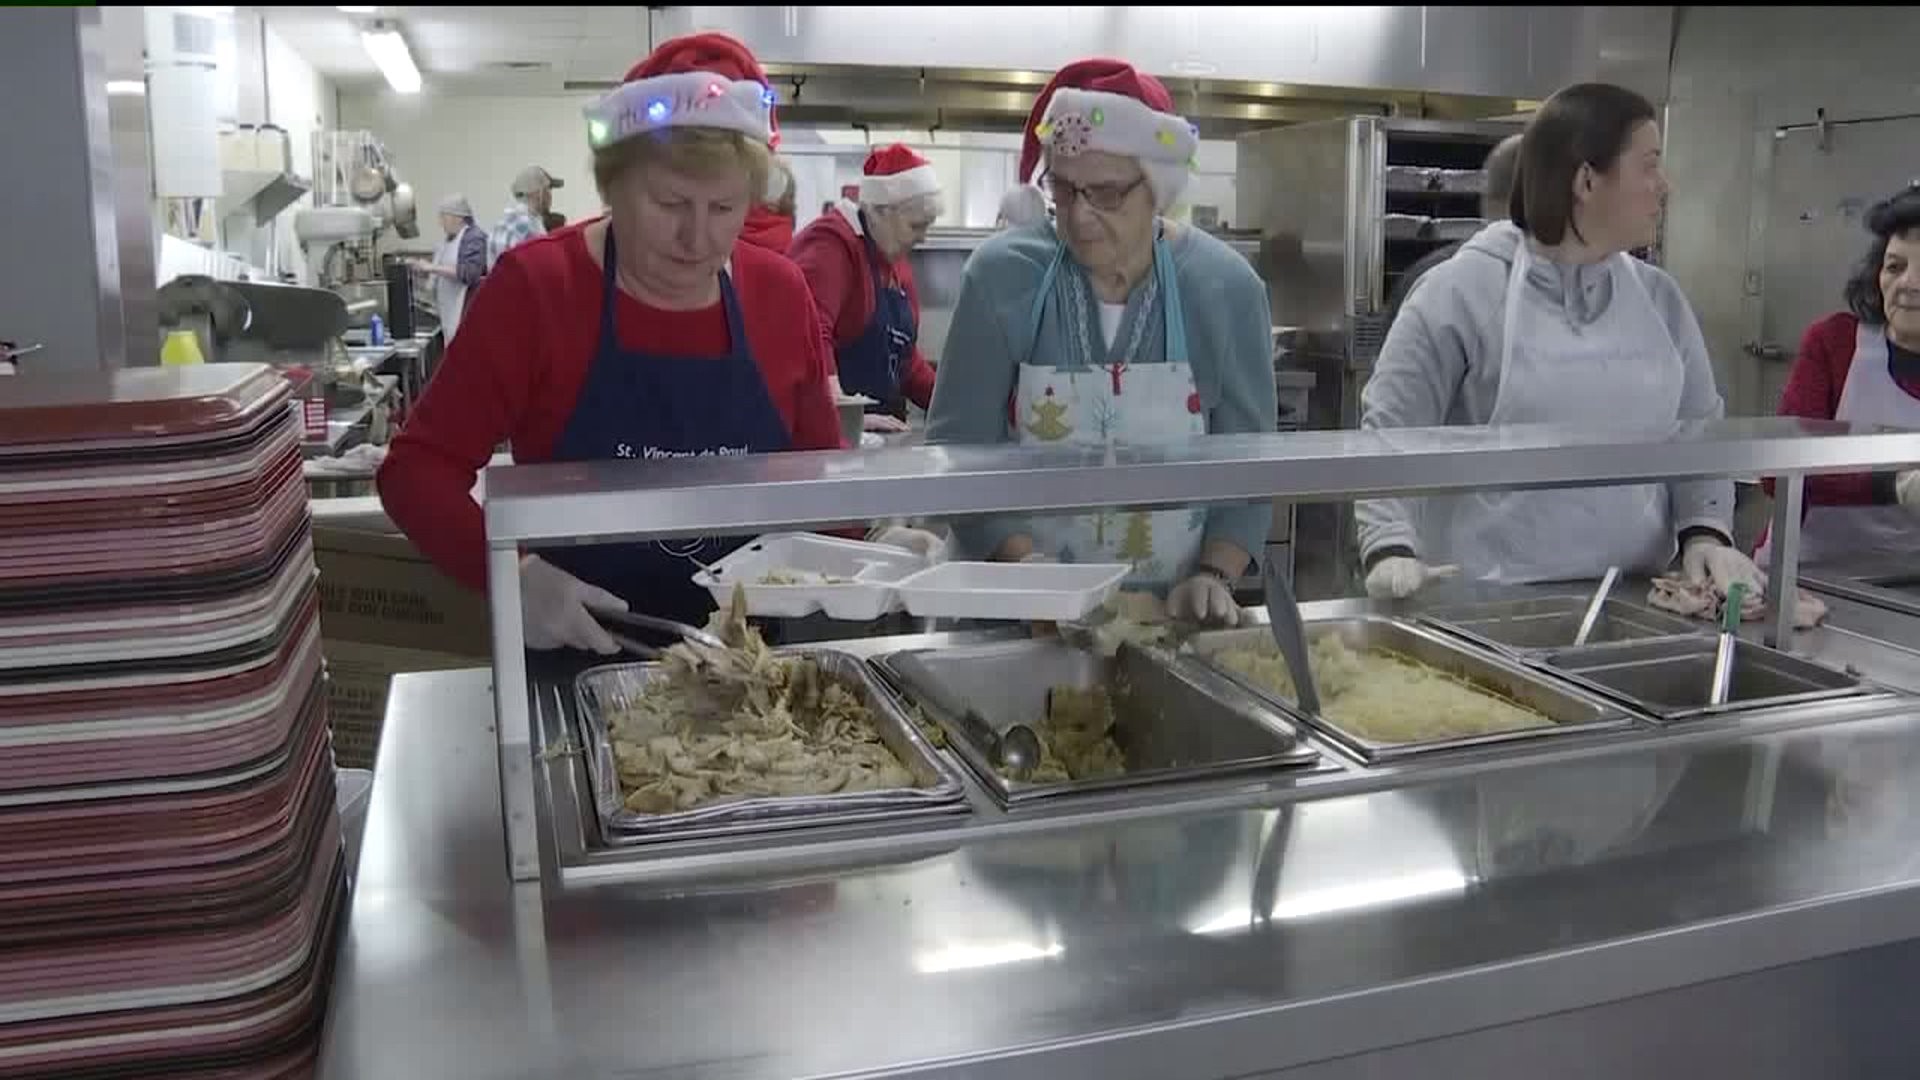 St. Vincent De Paul Kitchen Feeds 1,000 On Christmas